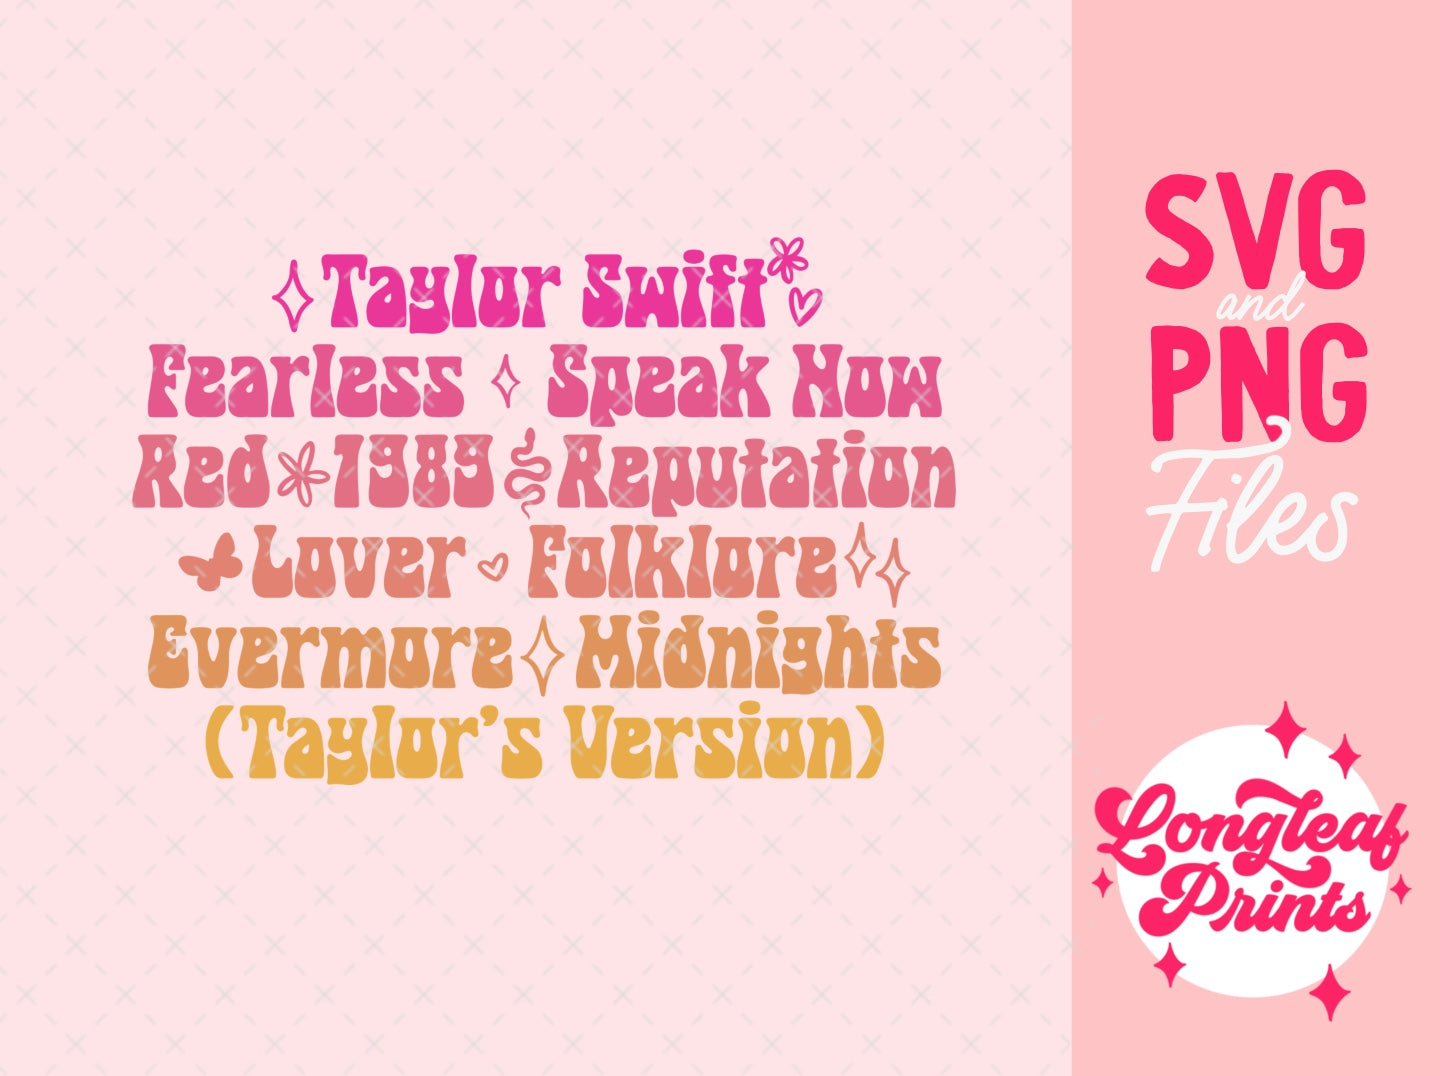 Taylor Swift Album SVG Digital Download Design File